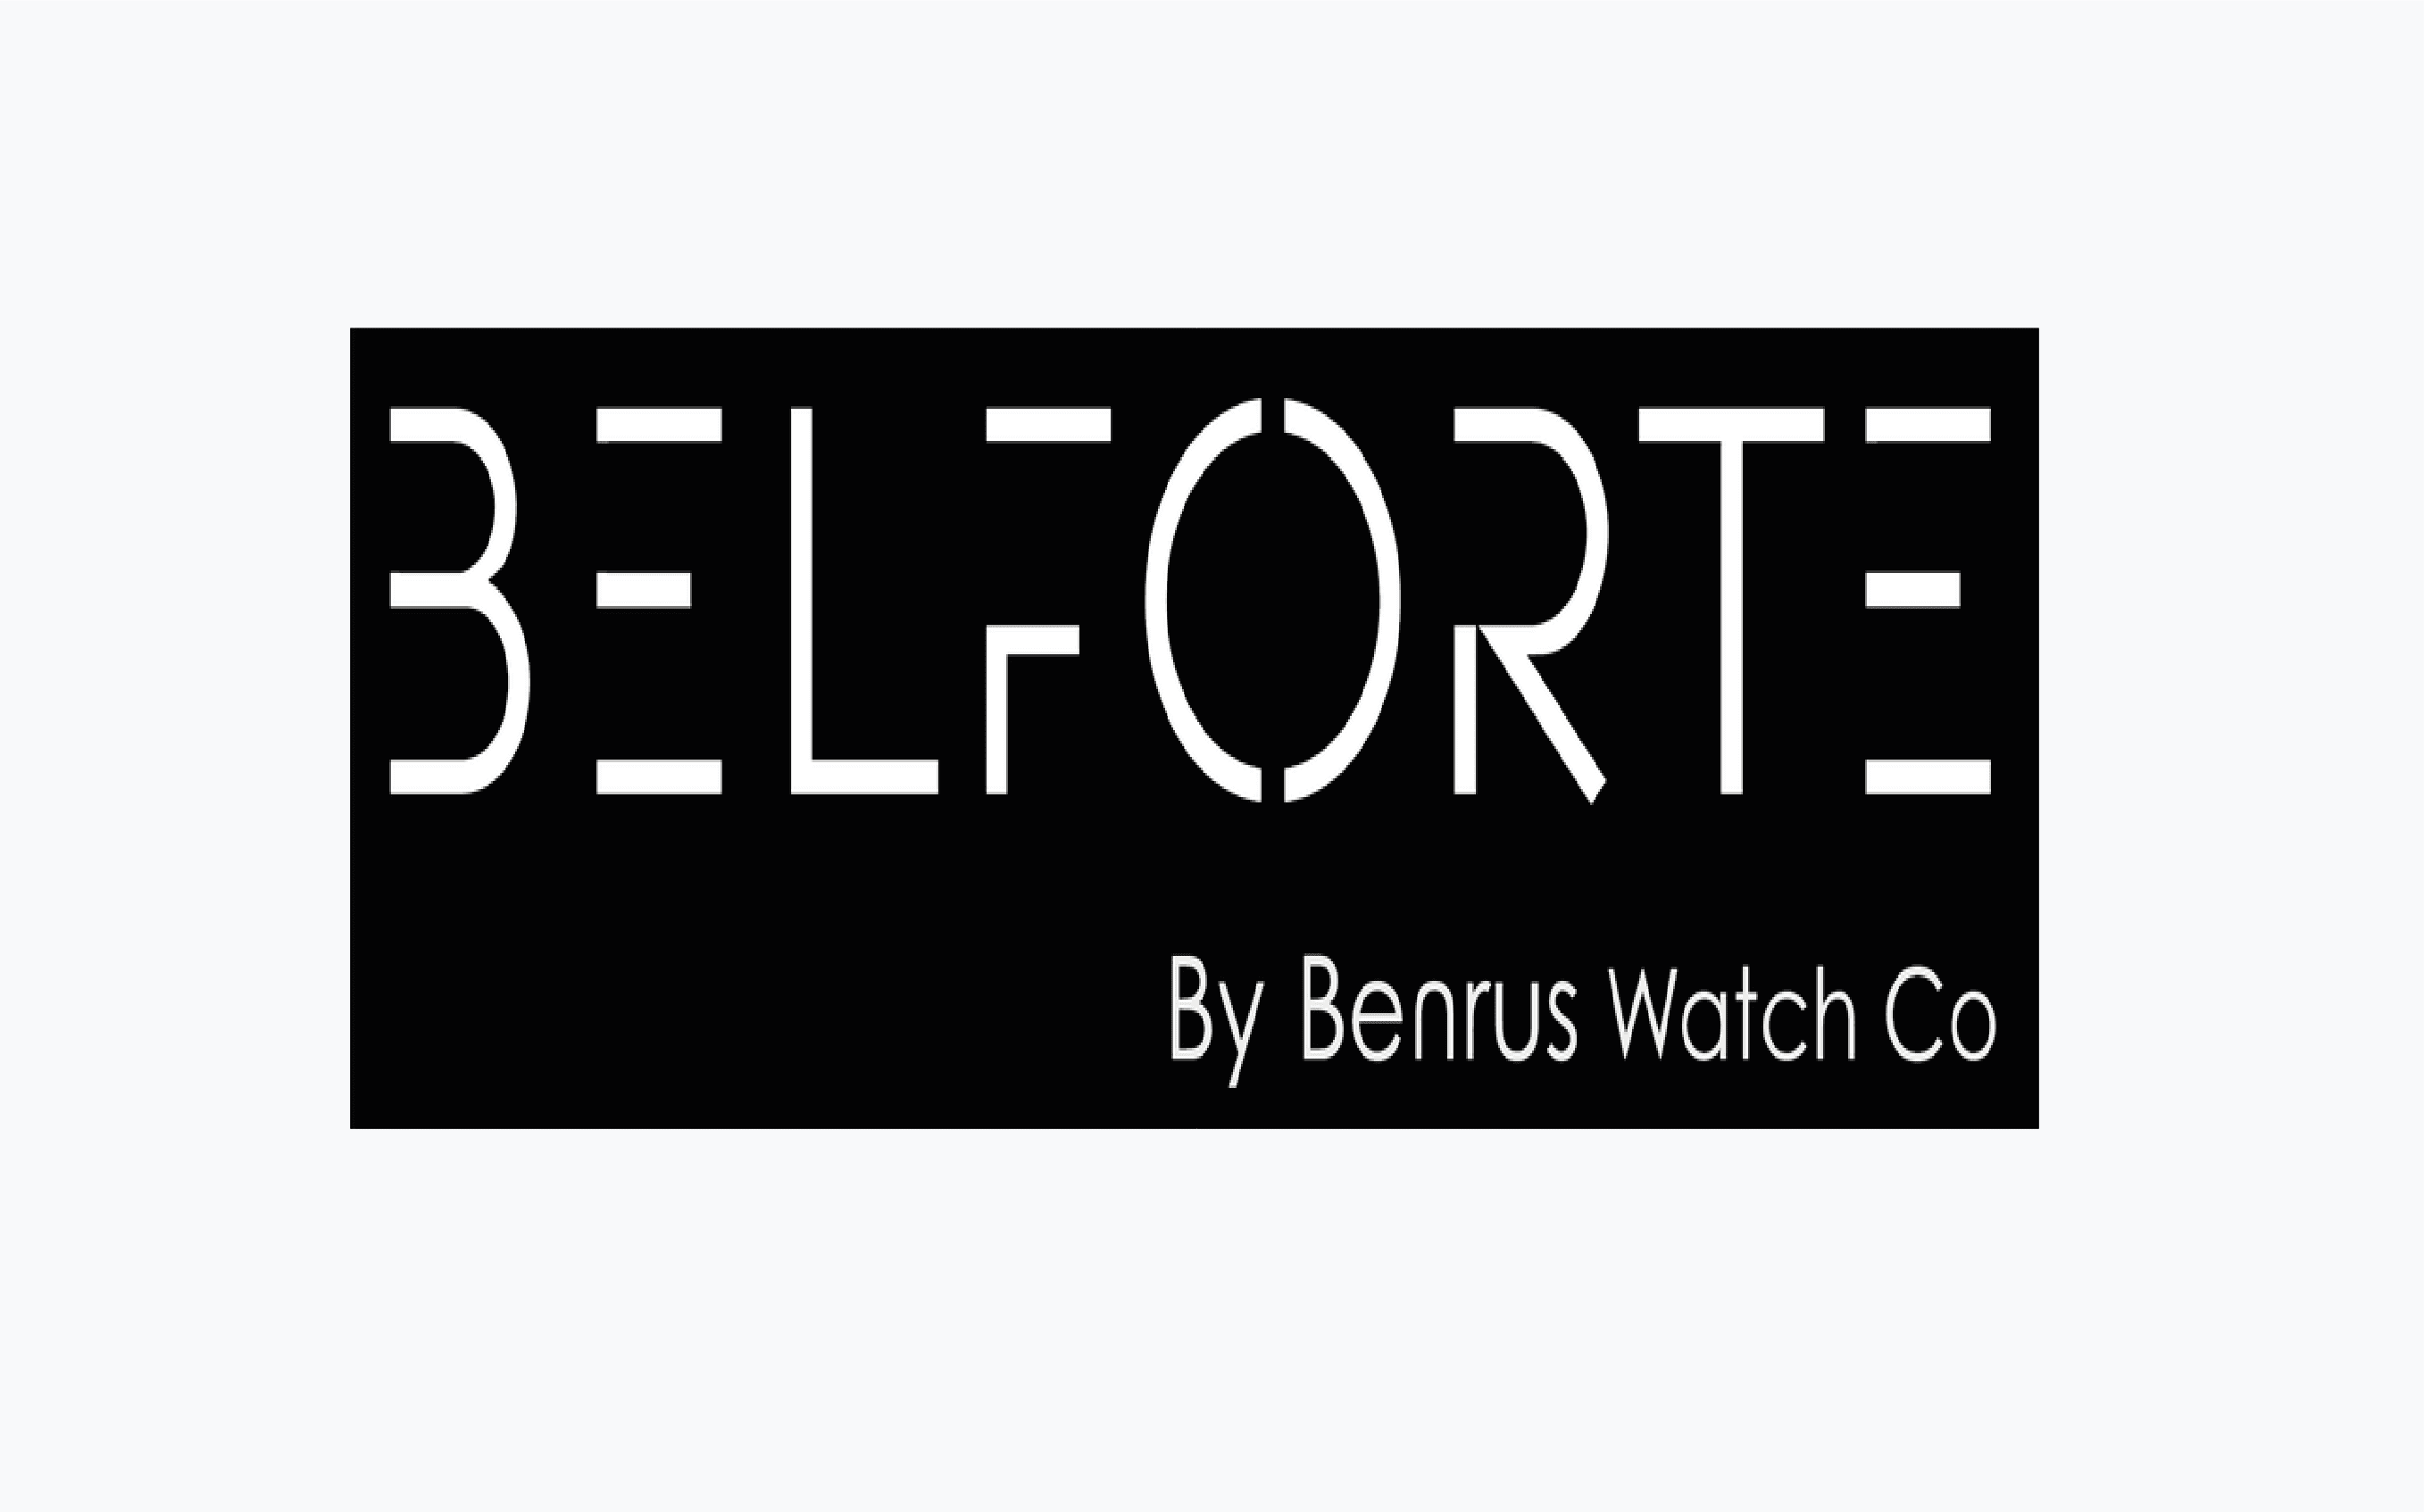 Belforte category